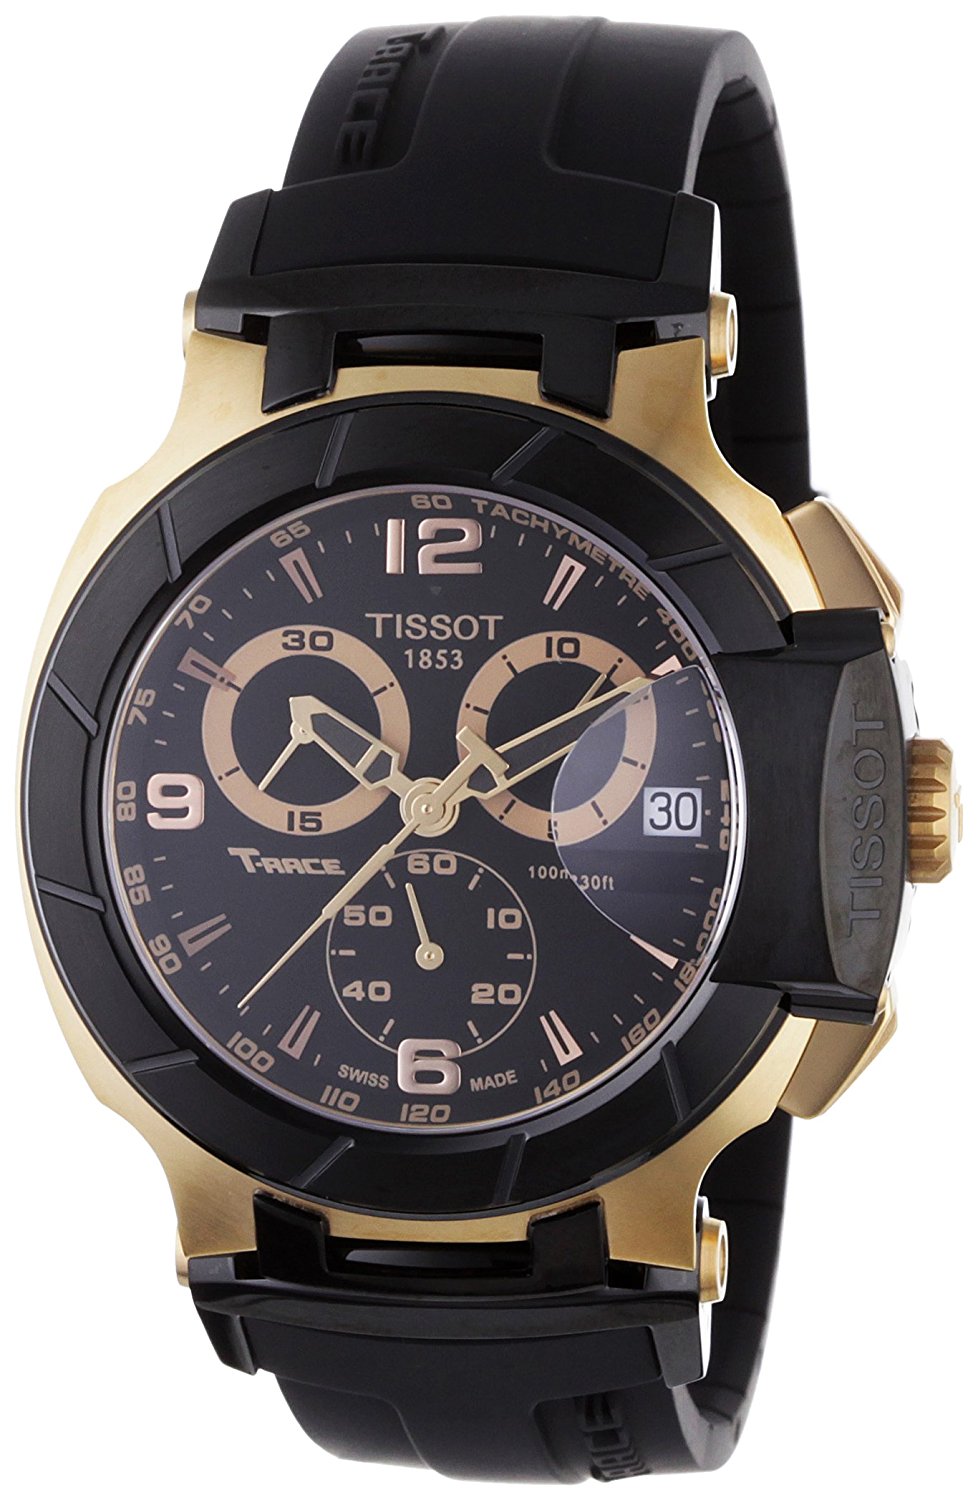 Часы tissot t racing. Tissot t-Race. Tissot 1853 Chronograph. Часы тиссот 1853 хронограф. Часы Tissot t-Race Chronograph.